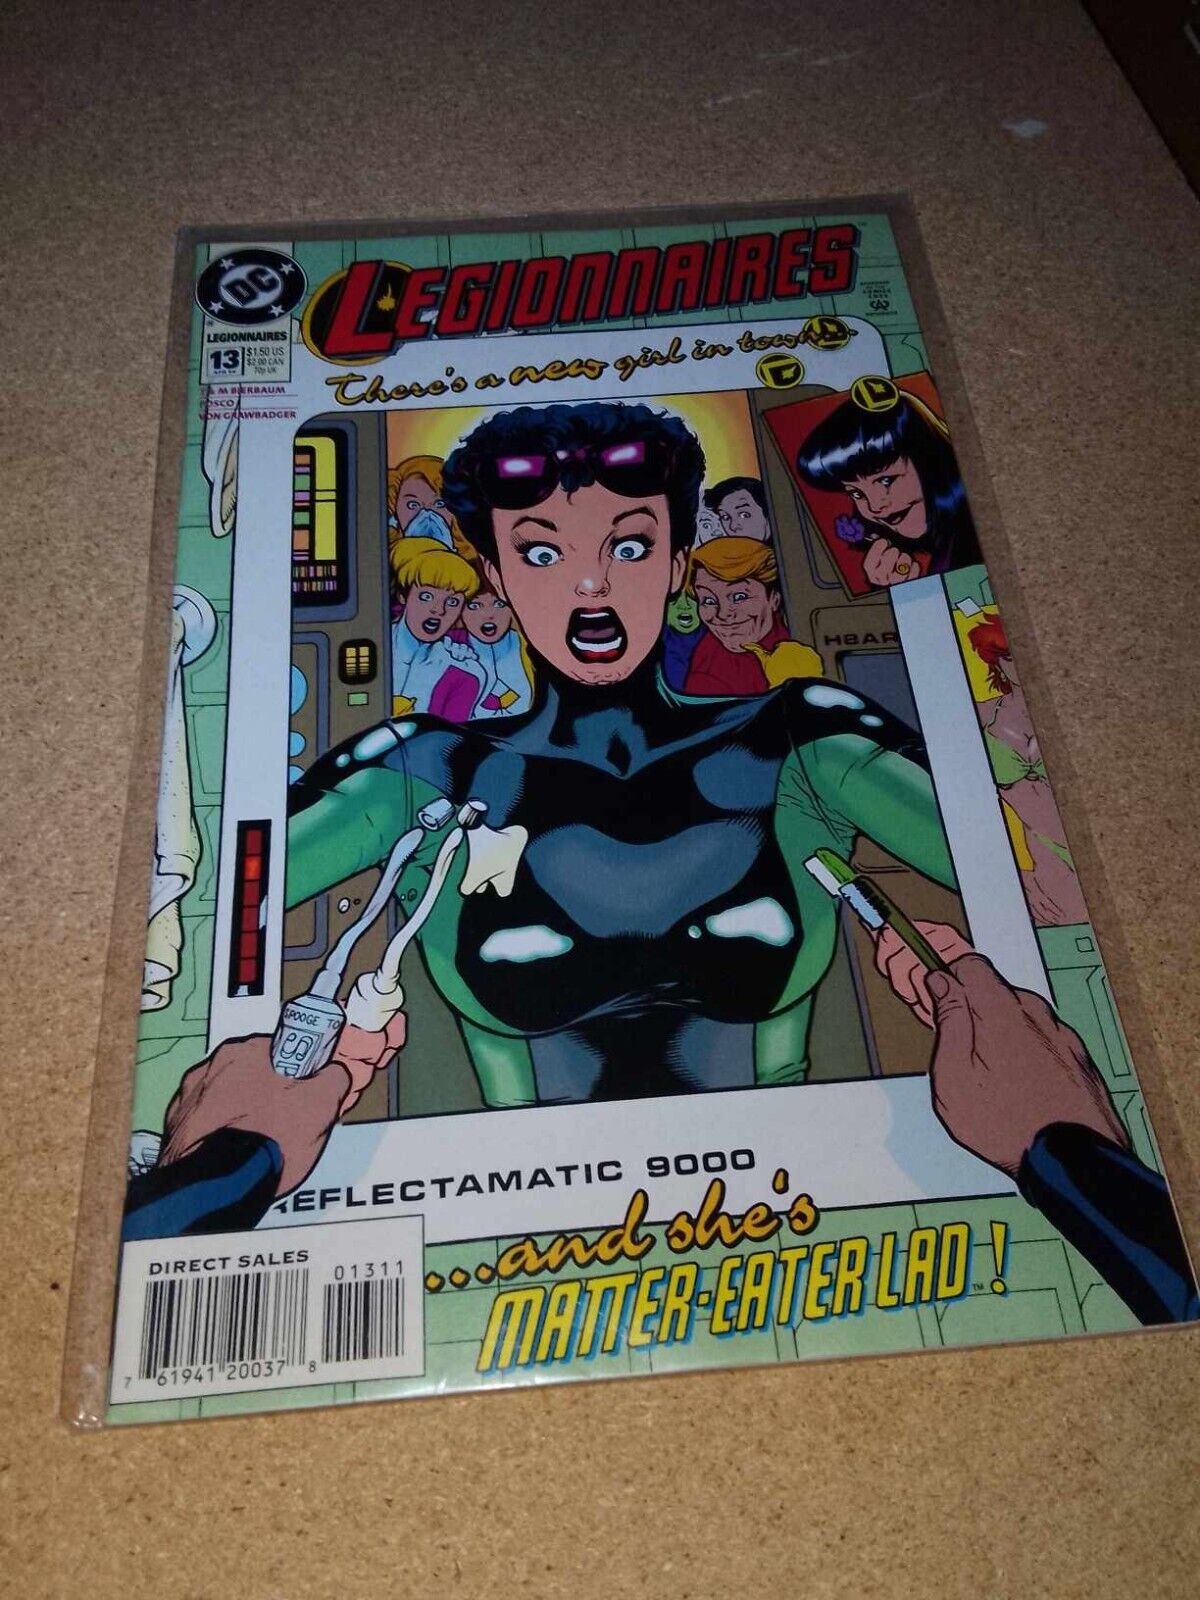 Legionnaires #13 April 1994 DC Comics Bierbaum Sprouse Story